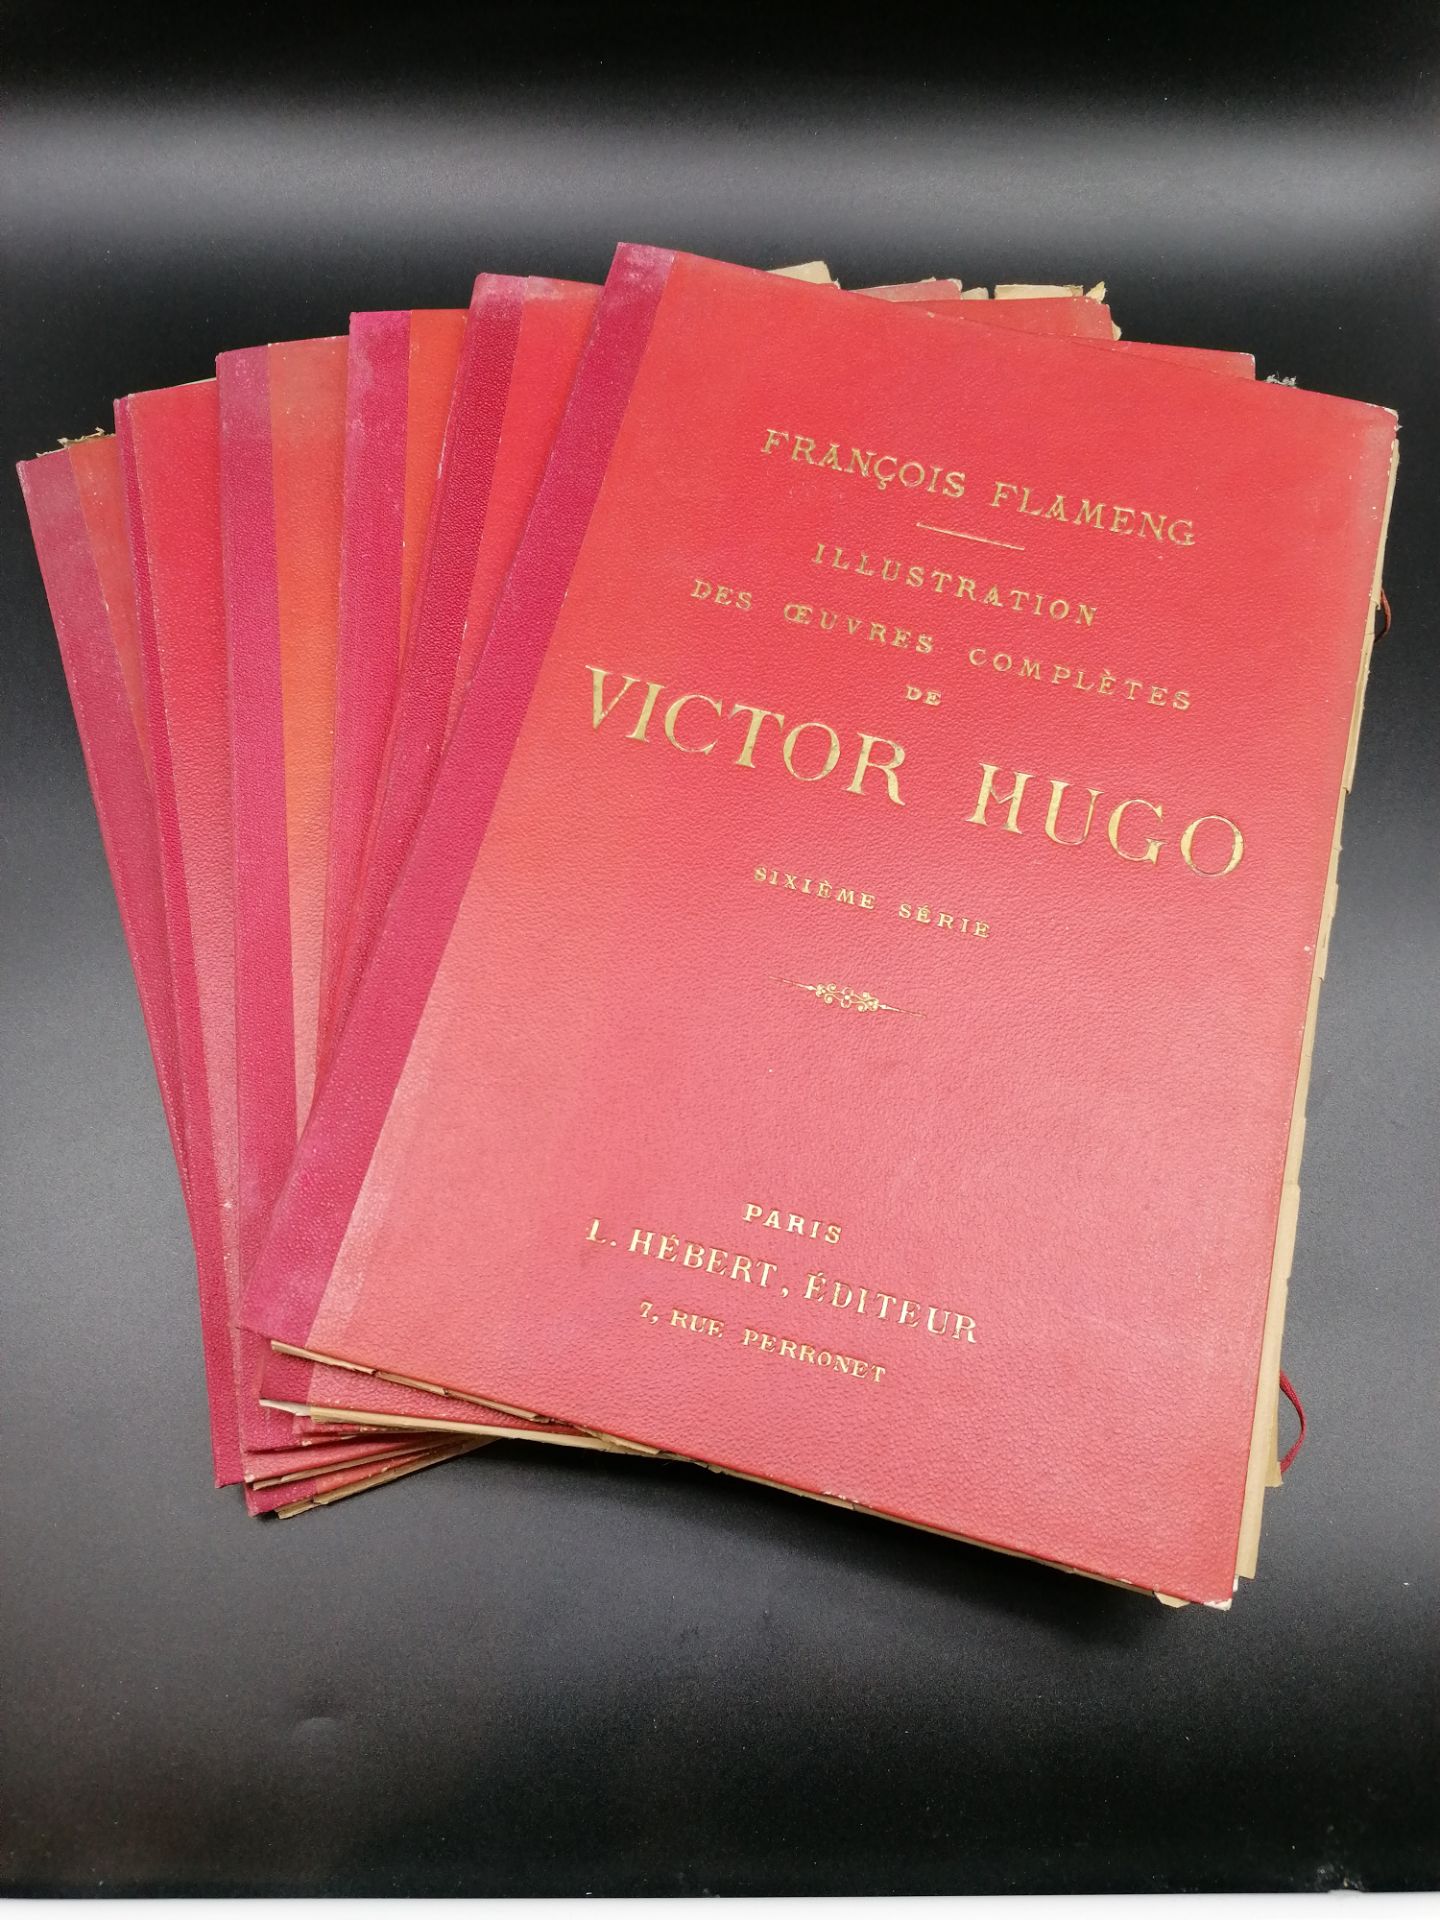 François Flameng, Illustration of the complete works by Victor Hugo, Ed. L. Hebert, Paris, s.d.6 col